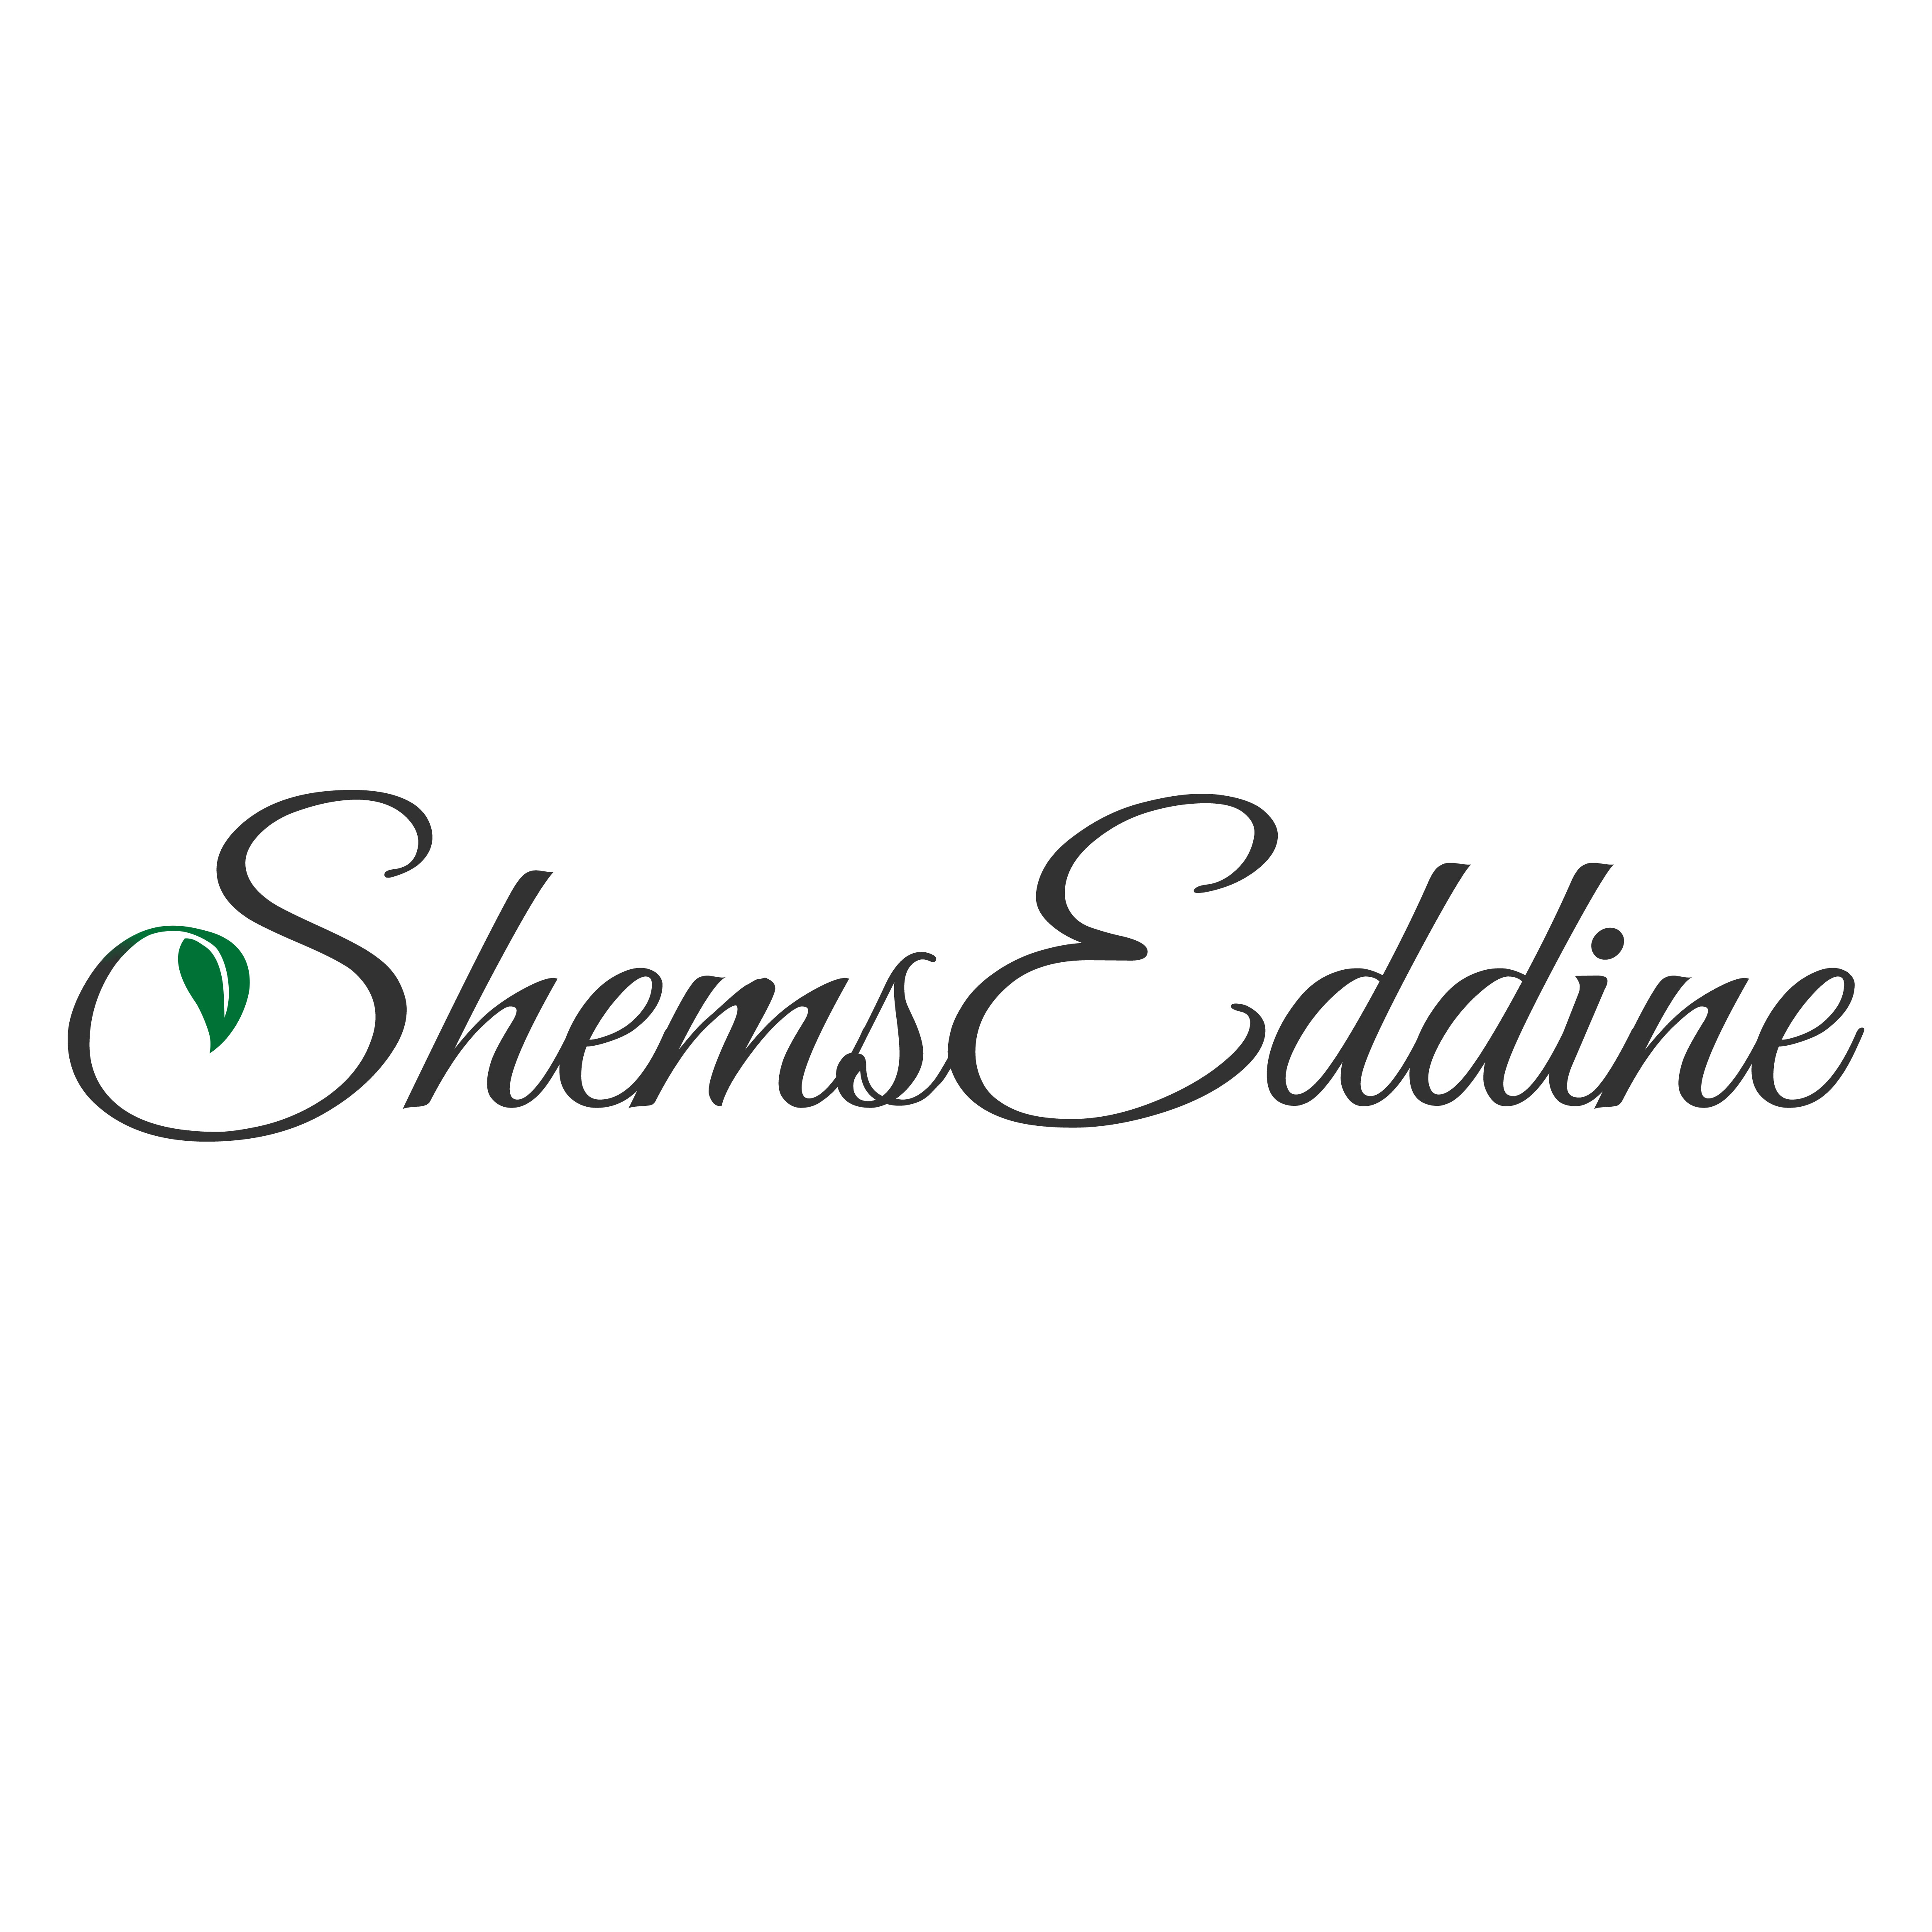 Shems Eddine Mohamed - zdjÄcie profilowe